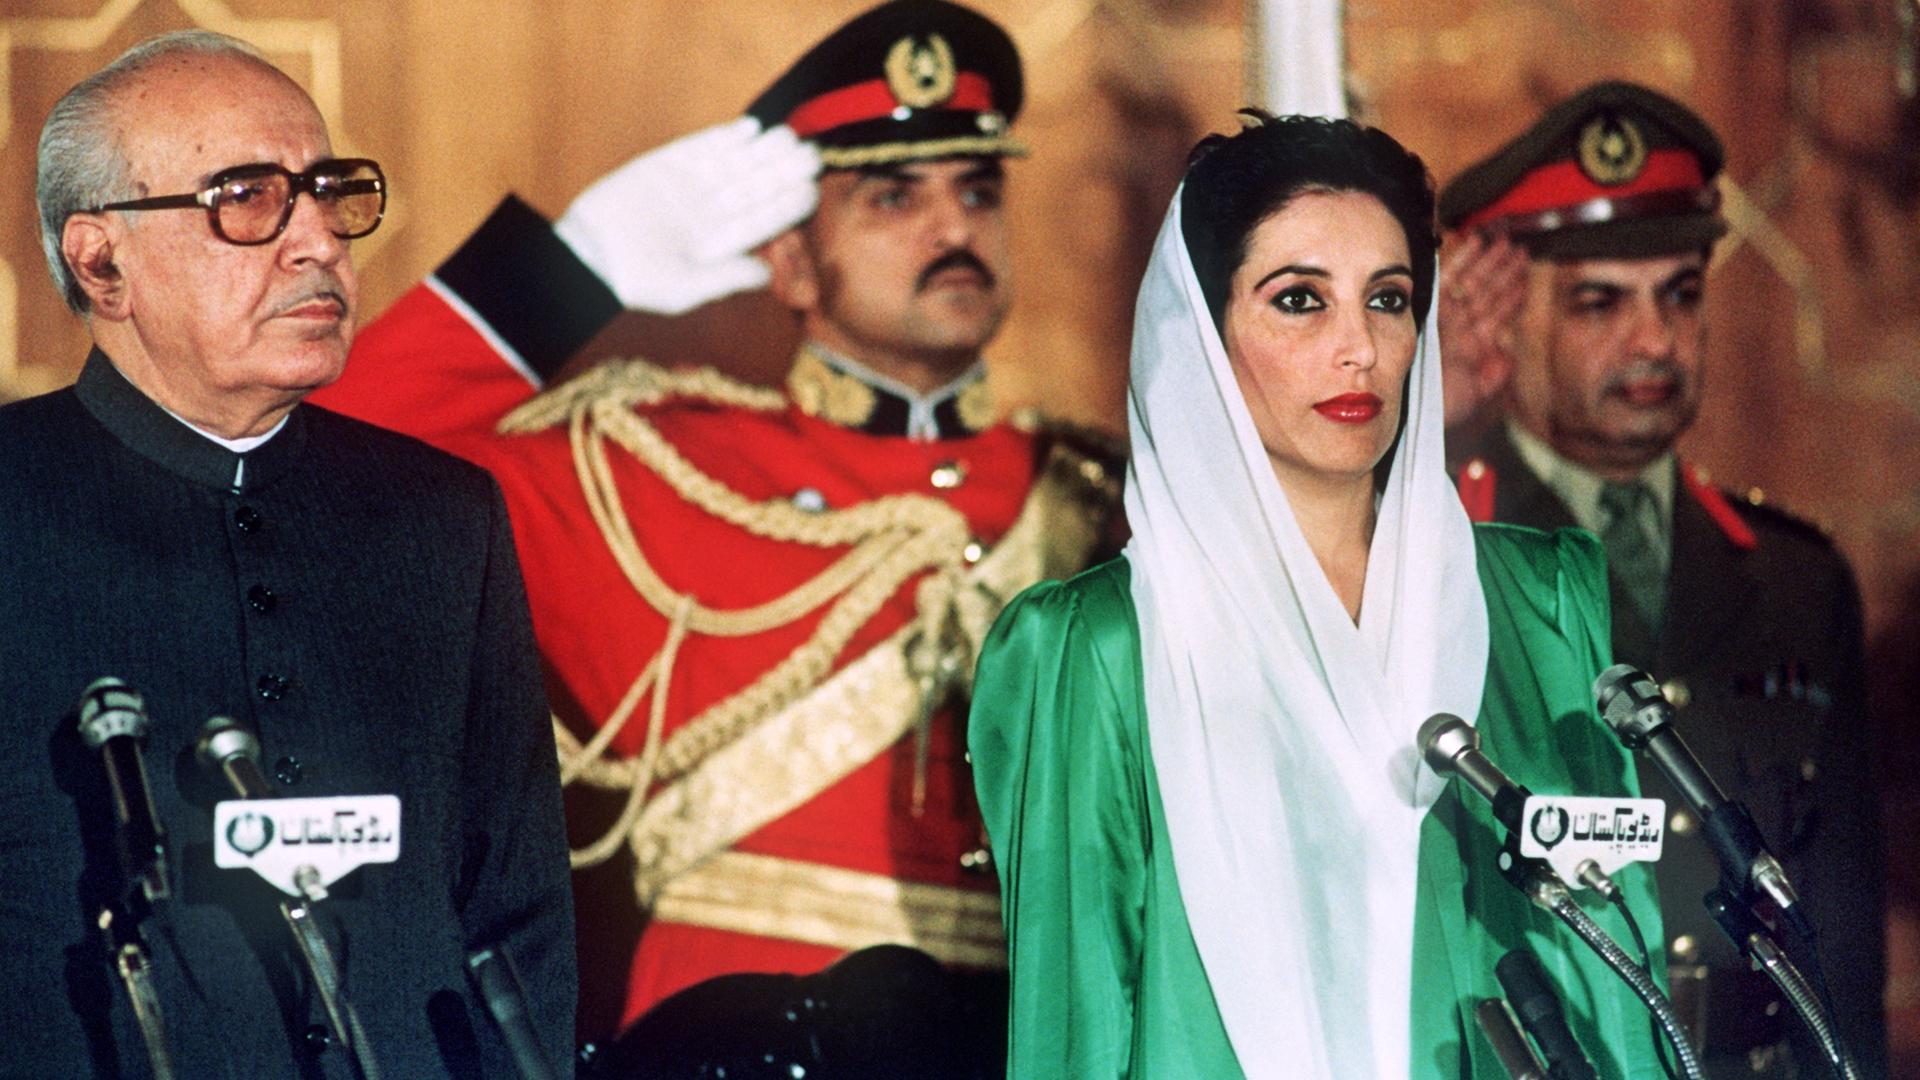 Benazir Bhutto während ihrer Vereidigung in Islamabad neben Präsident Ghulam Ishaq Khan. Die Pakistanische Volkspartei (PPP) unter Führung der 35jährigen Politikerin ist aus den Parlamentswahlen am 16. November 1988 als klarer Sieger hervorgegangen. Am 1. Dezember wird Benazir Bhutto zur ersten Ministerpräsidentin eines islamischen Staates ernannt.